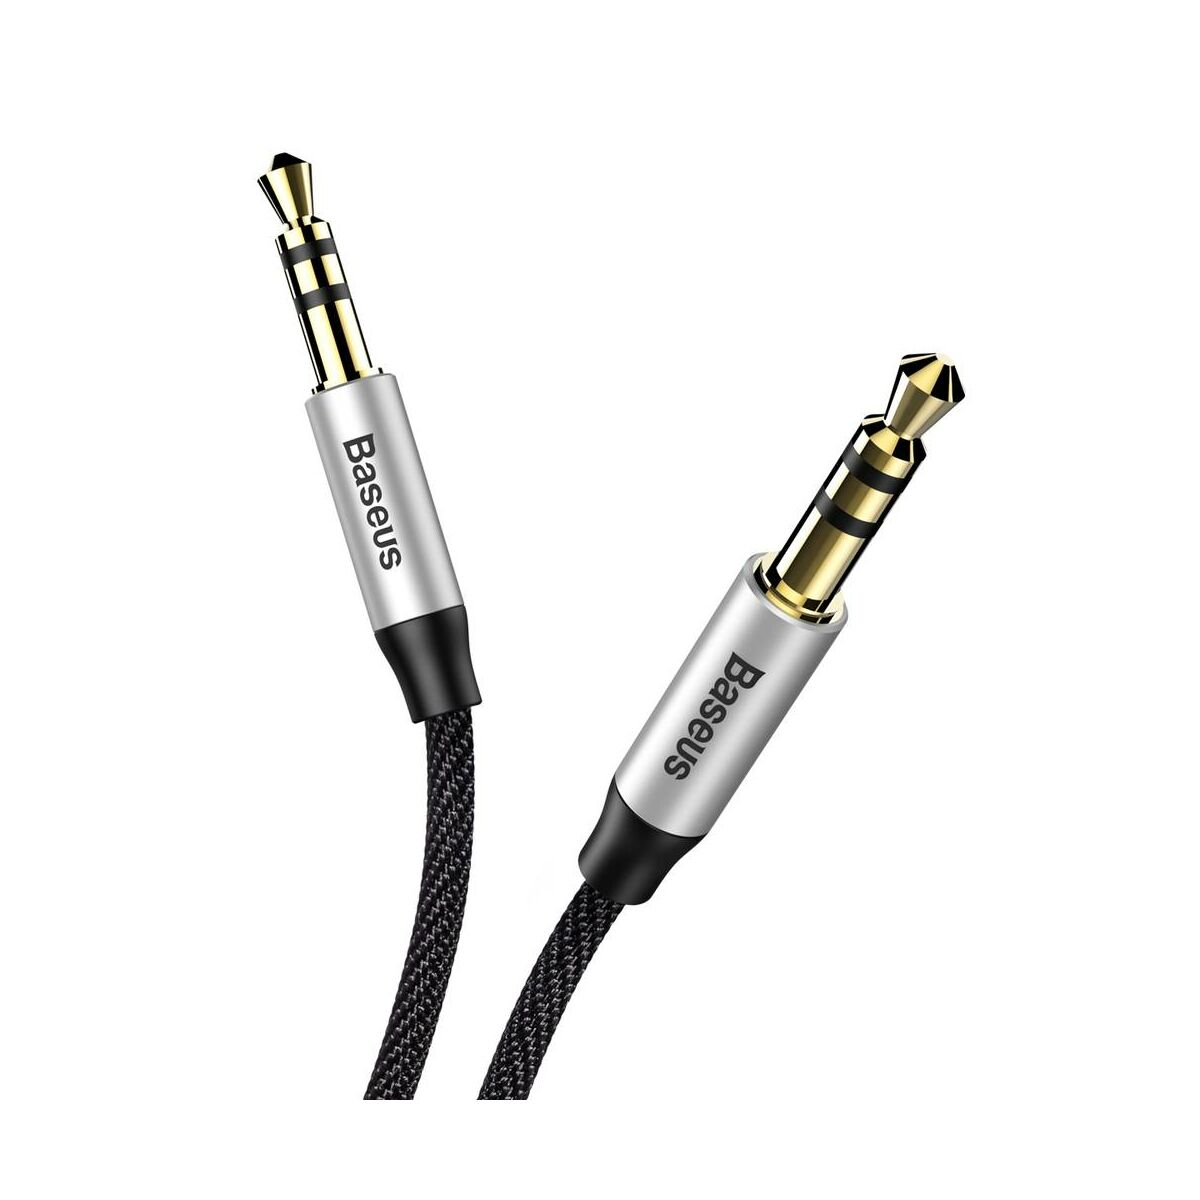 Baseus Audio kábel, Yiven M30 AUX 1m, ezüst/fekete (CAM30-BS1)